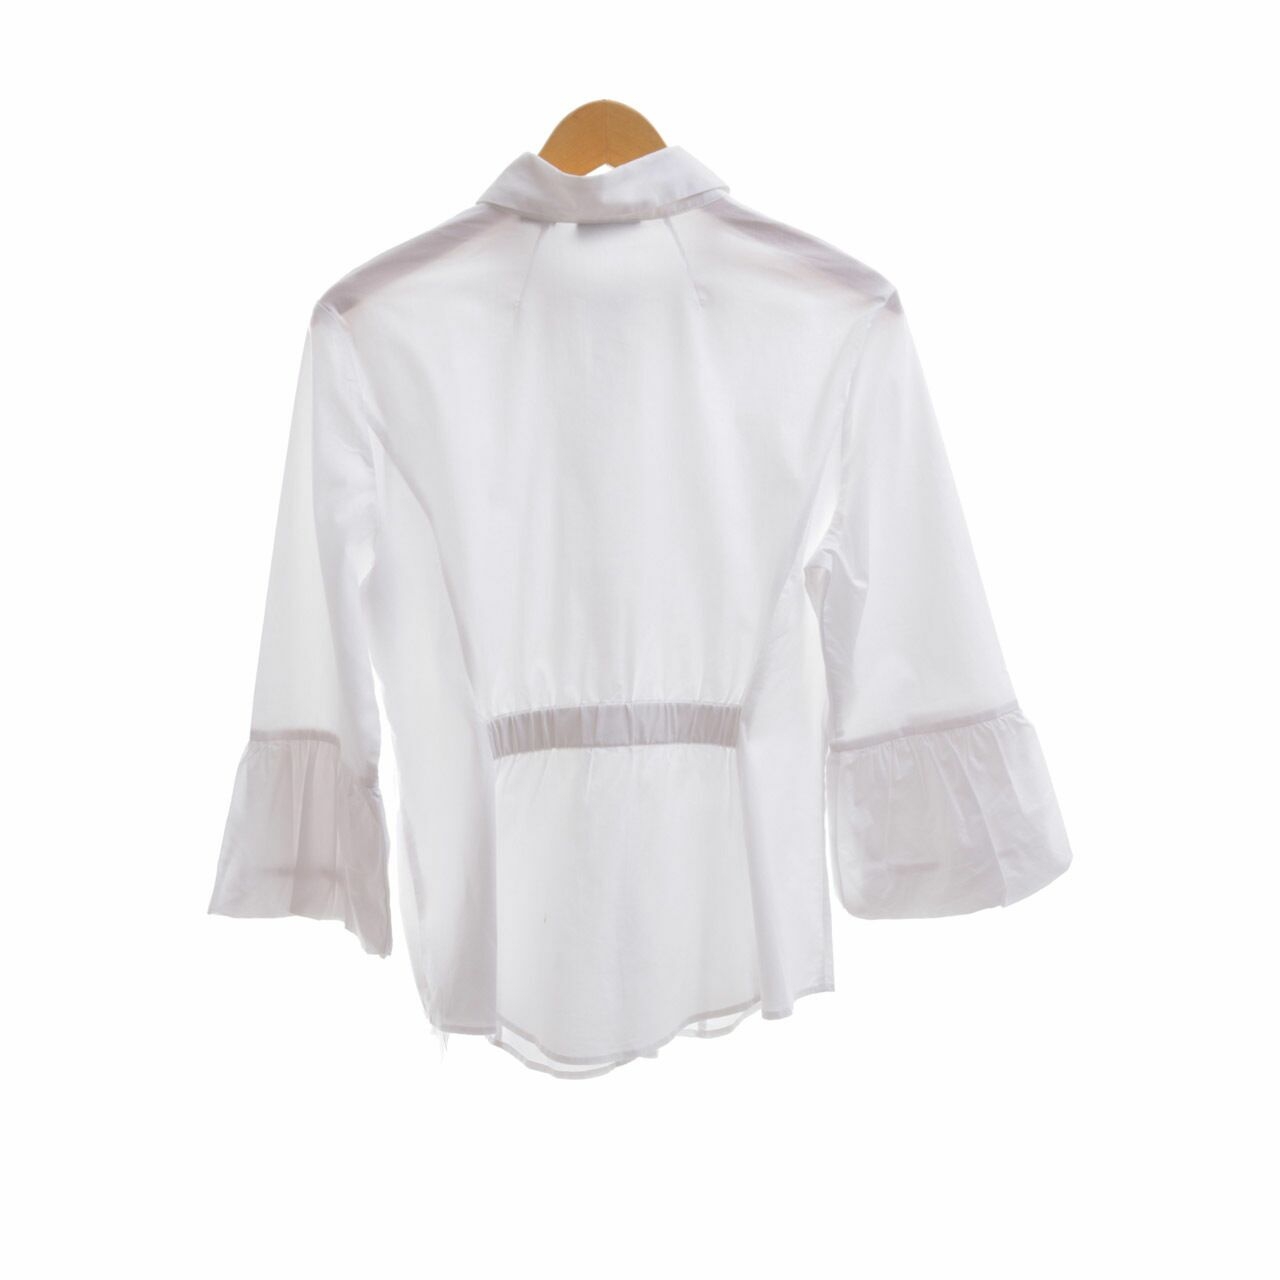 New York & Company White Shirt